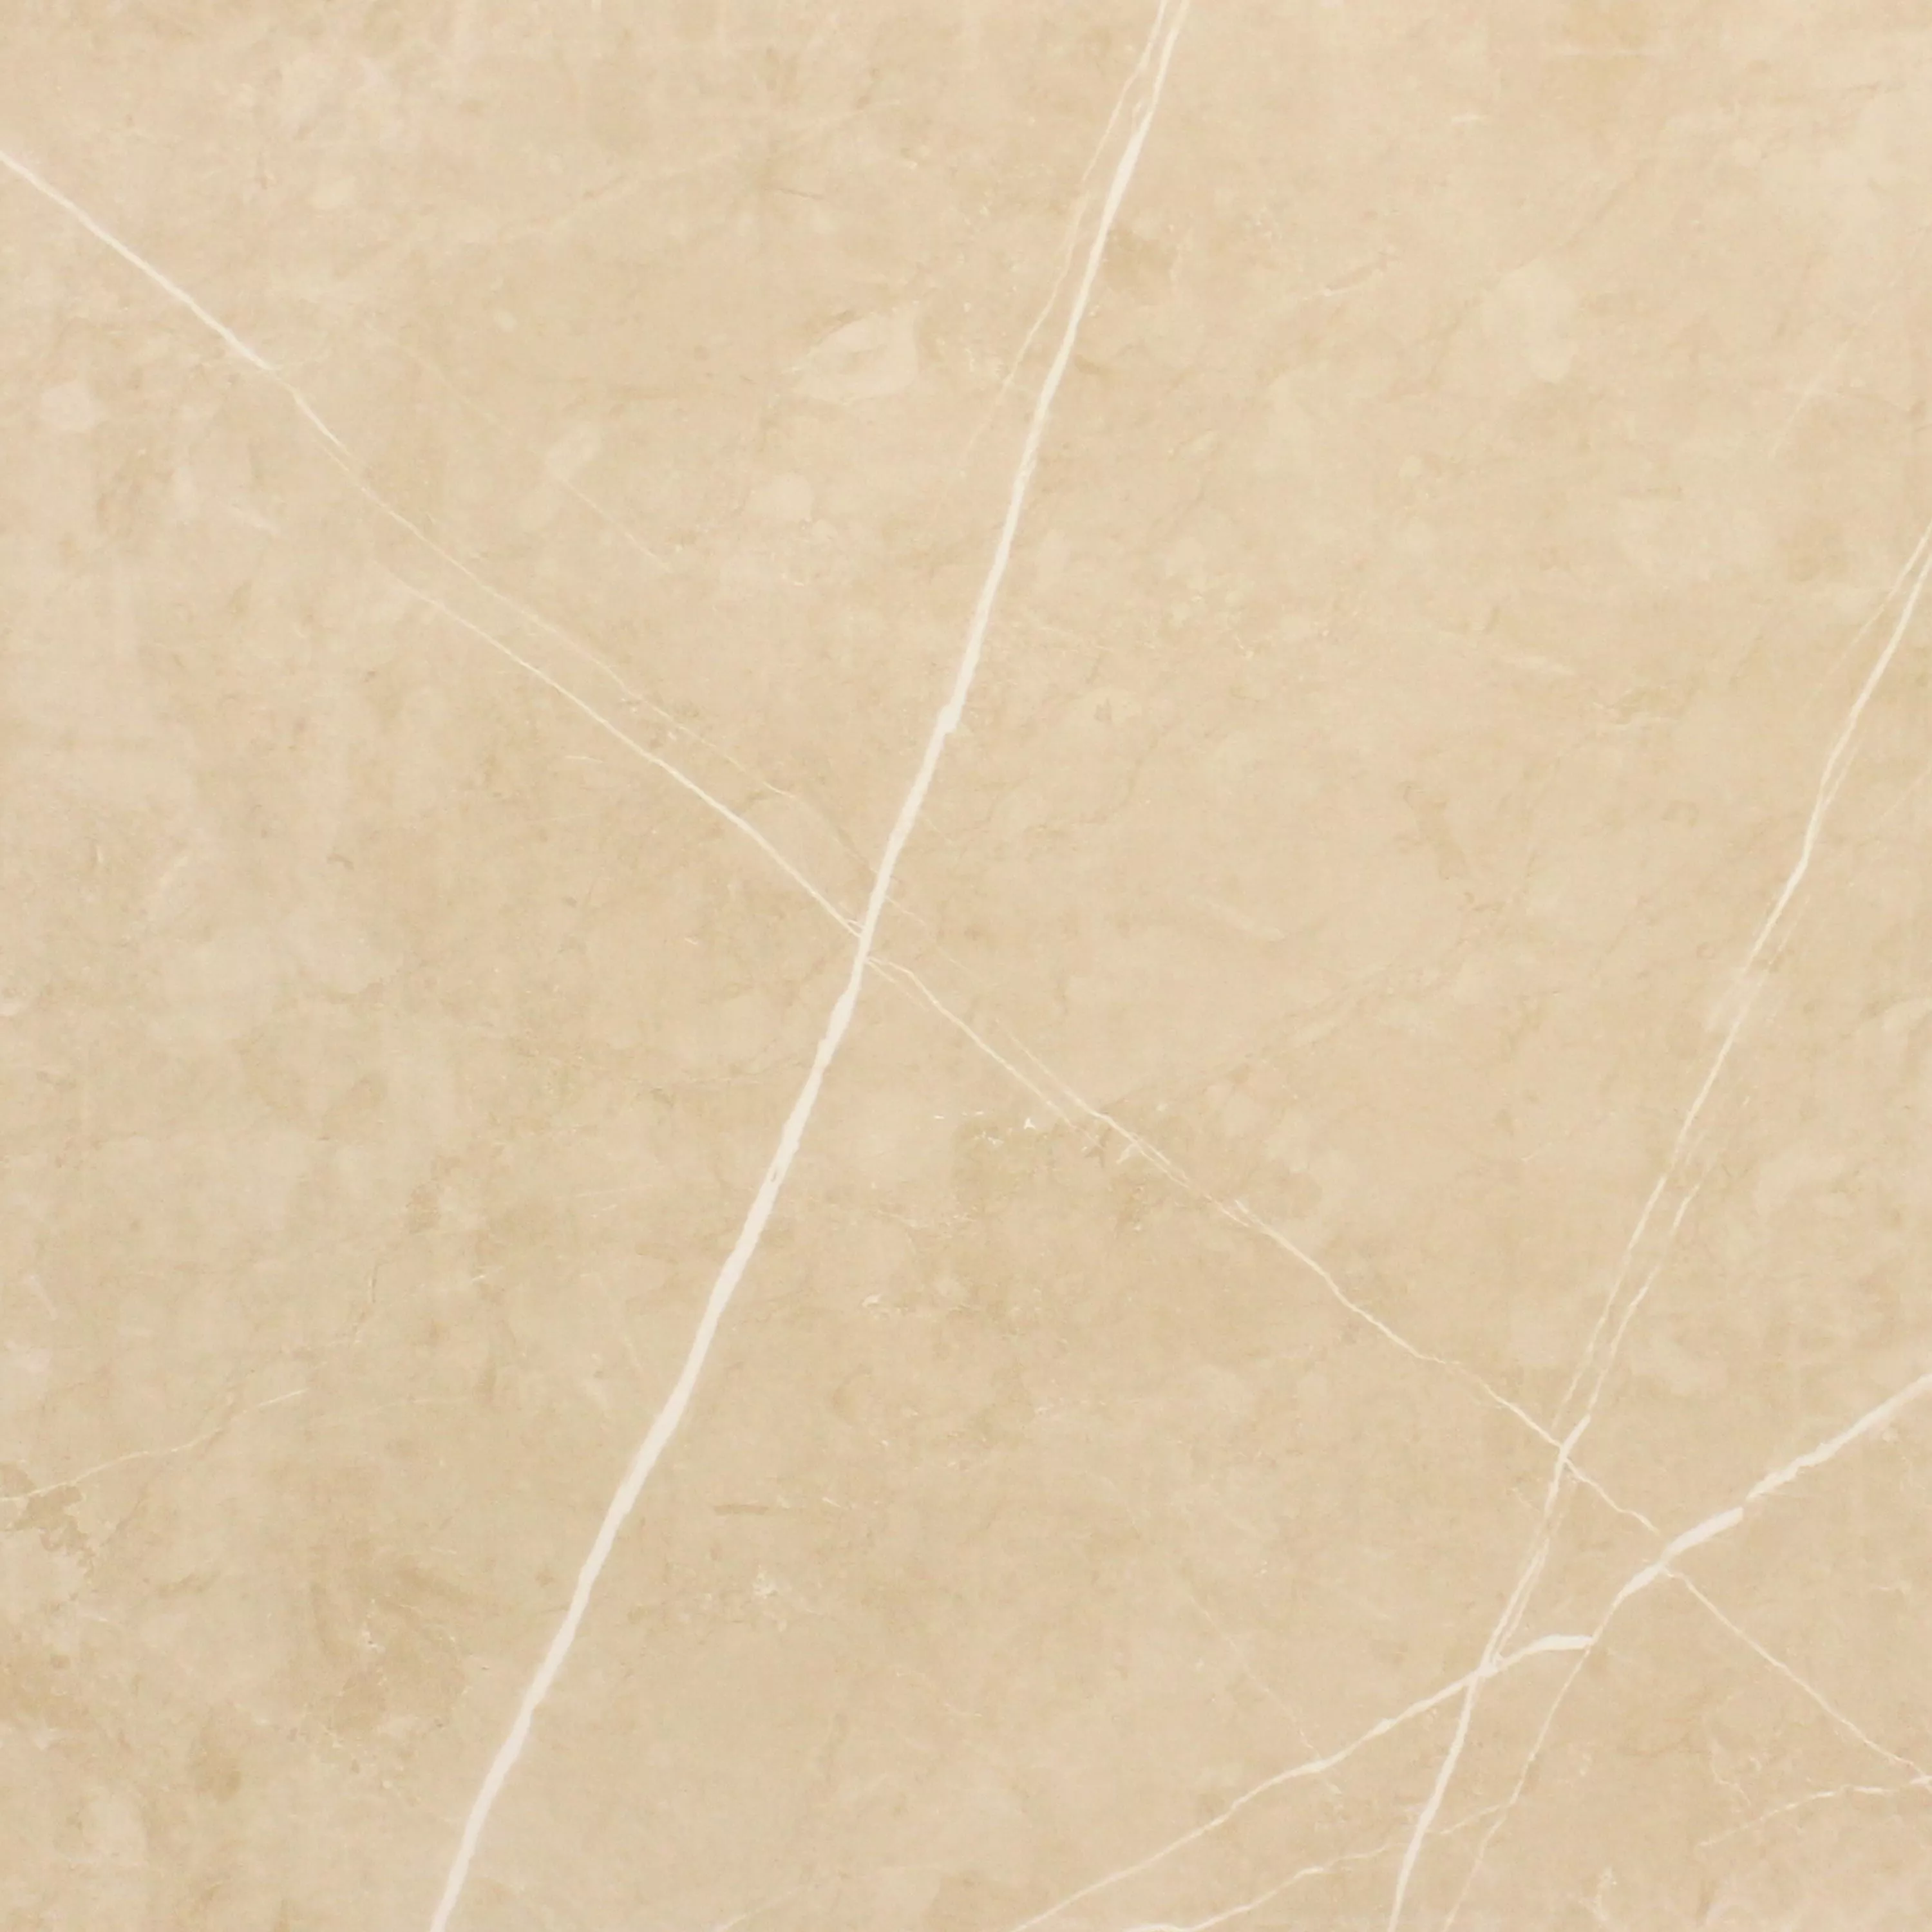 Πρότυπο Πλακάκια Δαπέδου Astara Eμφάνιση Φυσικής Πέτρας Αμεμπτος Μπεζ 60x60cm